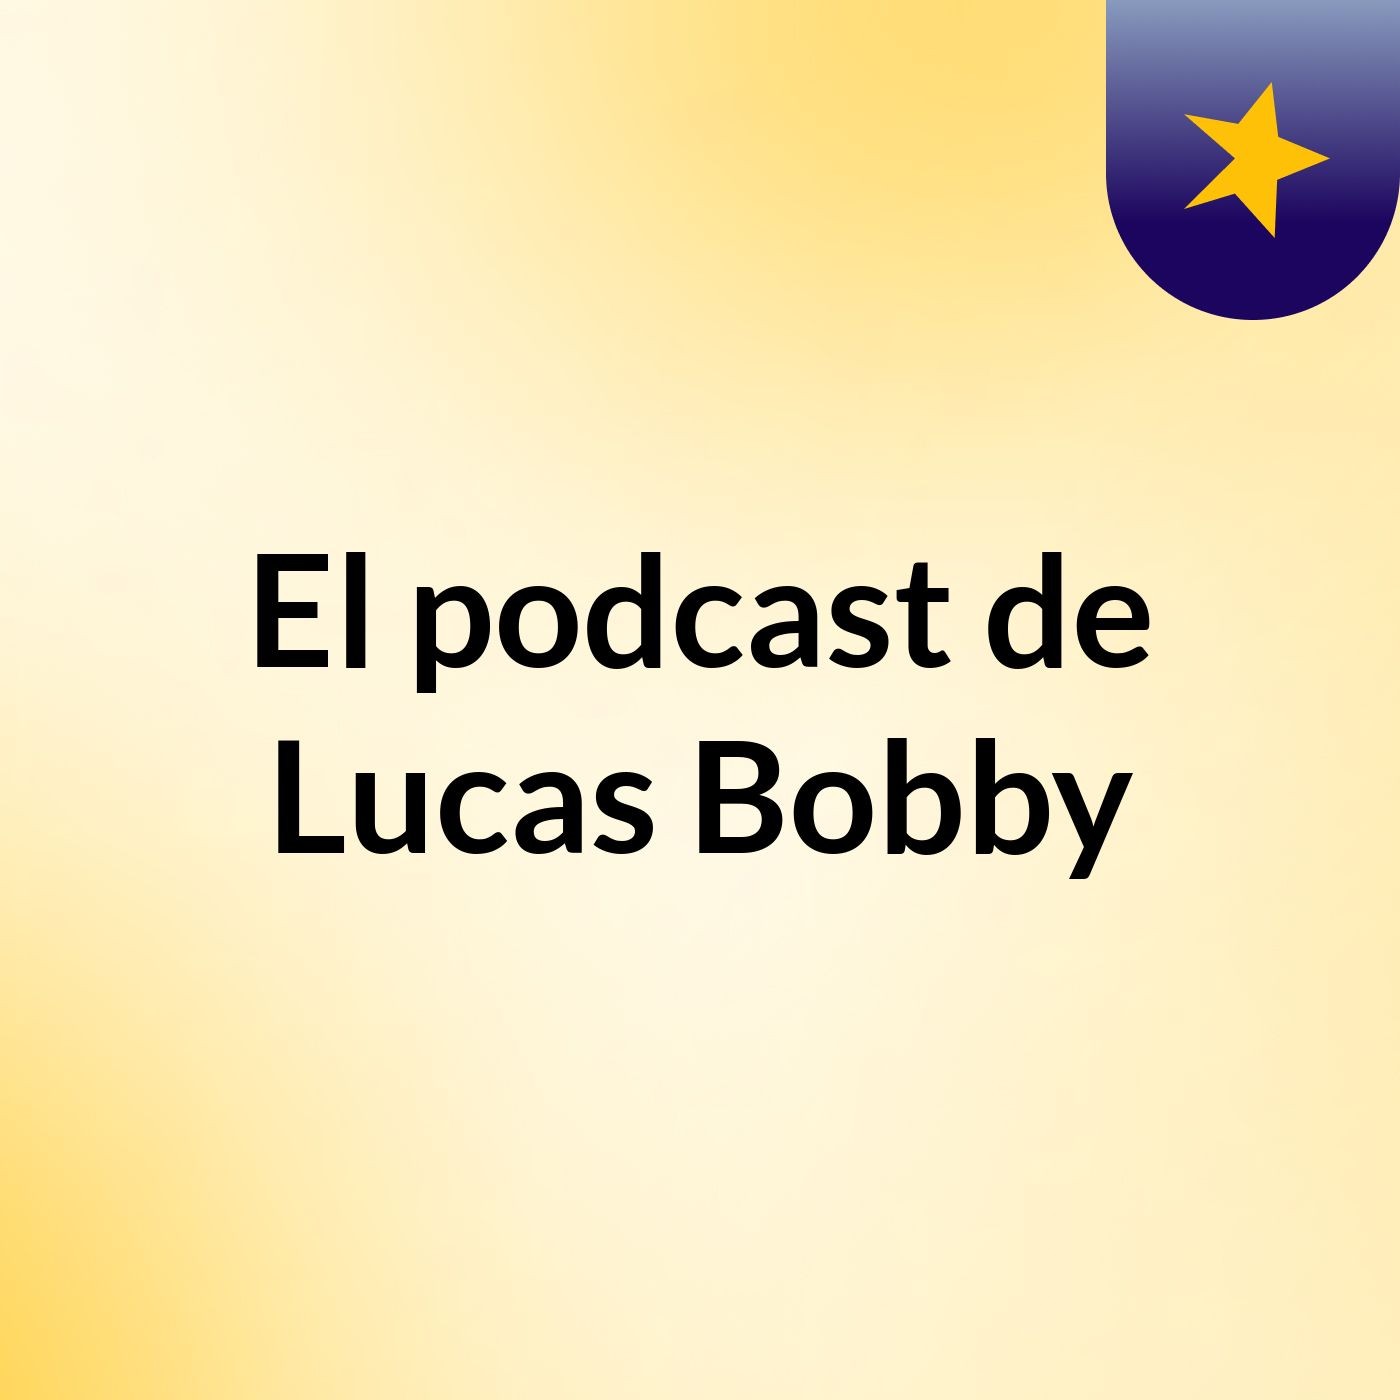 El podcast de Lucas Bobby